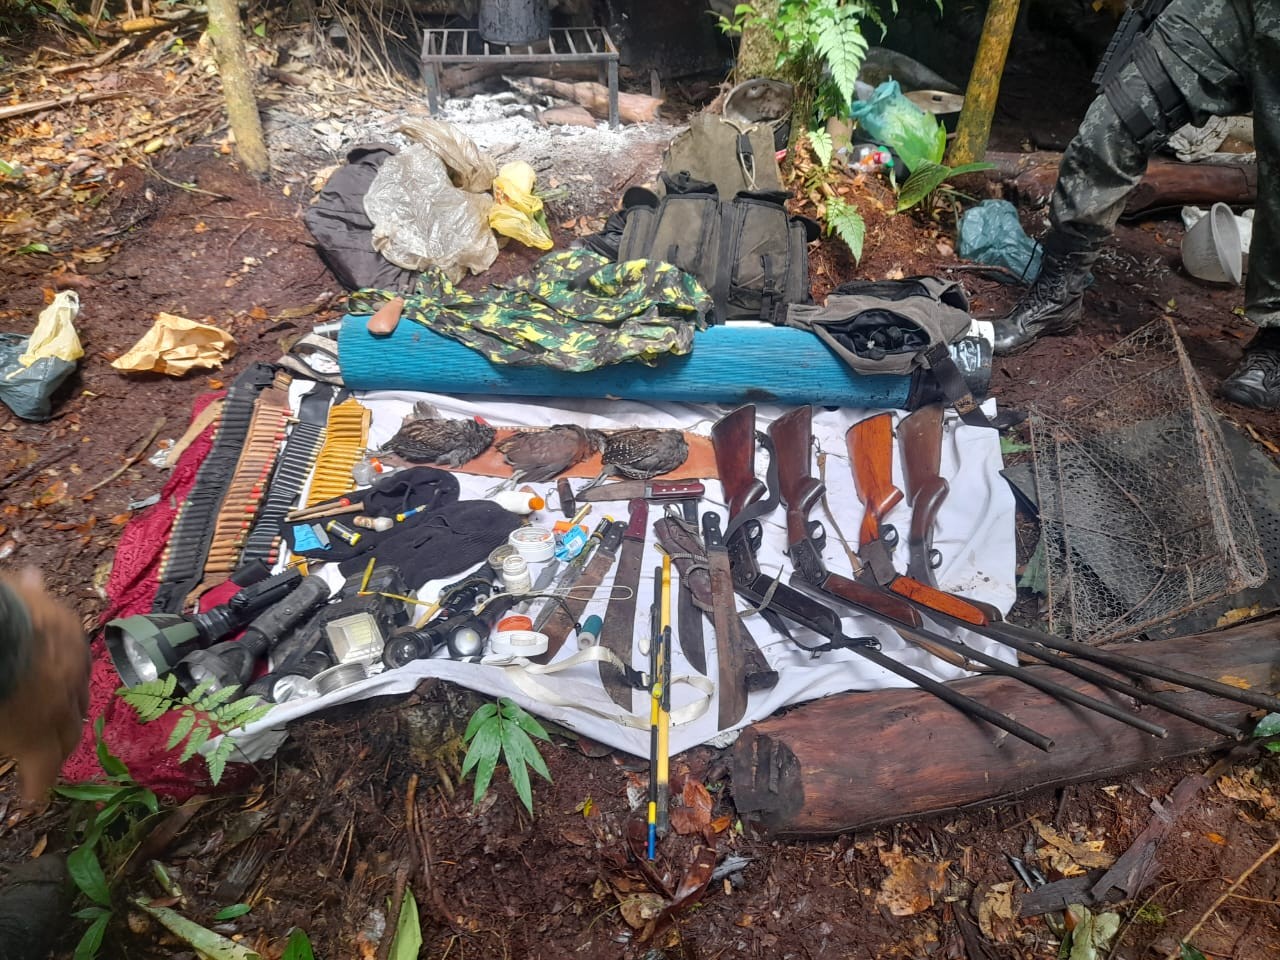 Homens são presos em flagrante por prática de caça em Biritiba Mirim